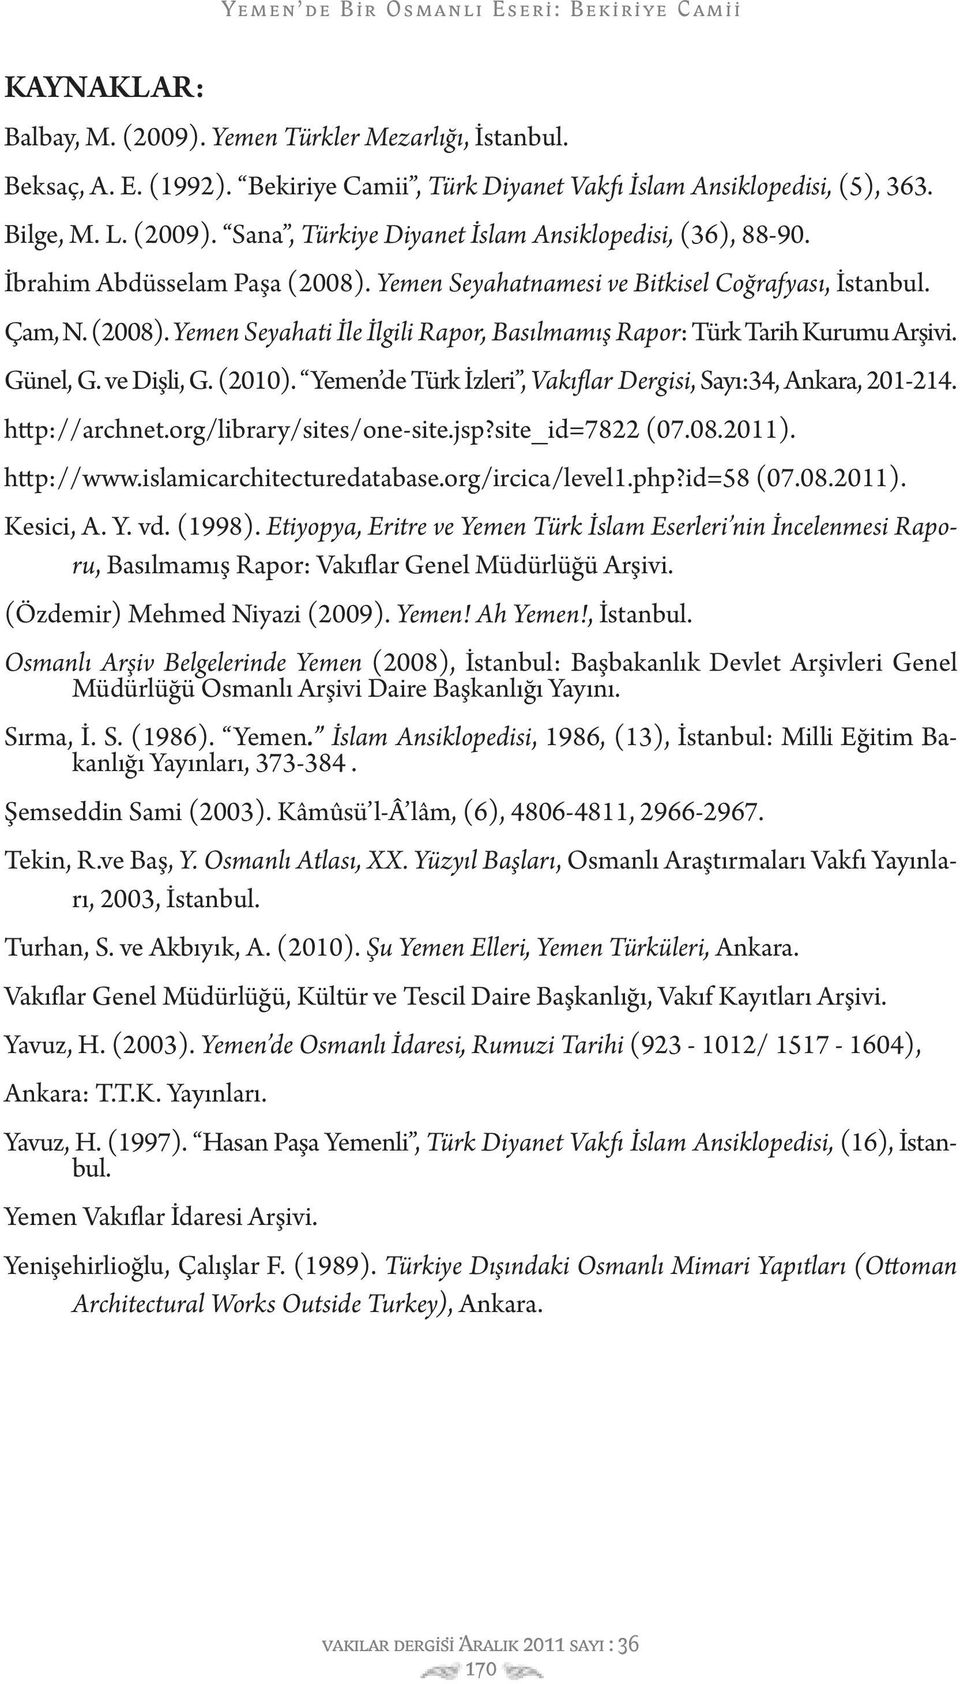 ve Dişli, G. (2010). Yemen de Türk İzleri, Vakıflar Dergisi, Sayı:34, Ankara, 201-214. http://archnet.org/library/sites/one-site.jsp?site_id=7822 (07.08.2011). http://www.islamicarchitecturedatabase.